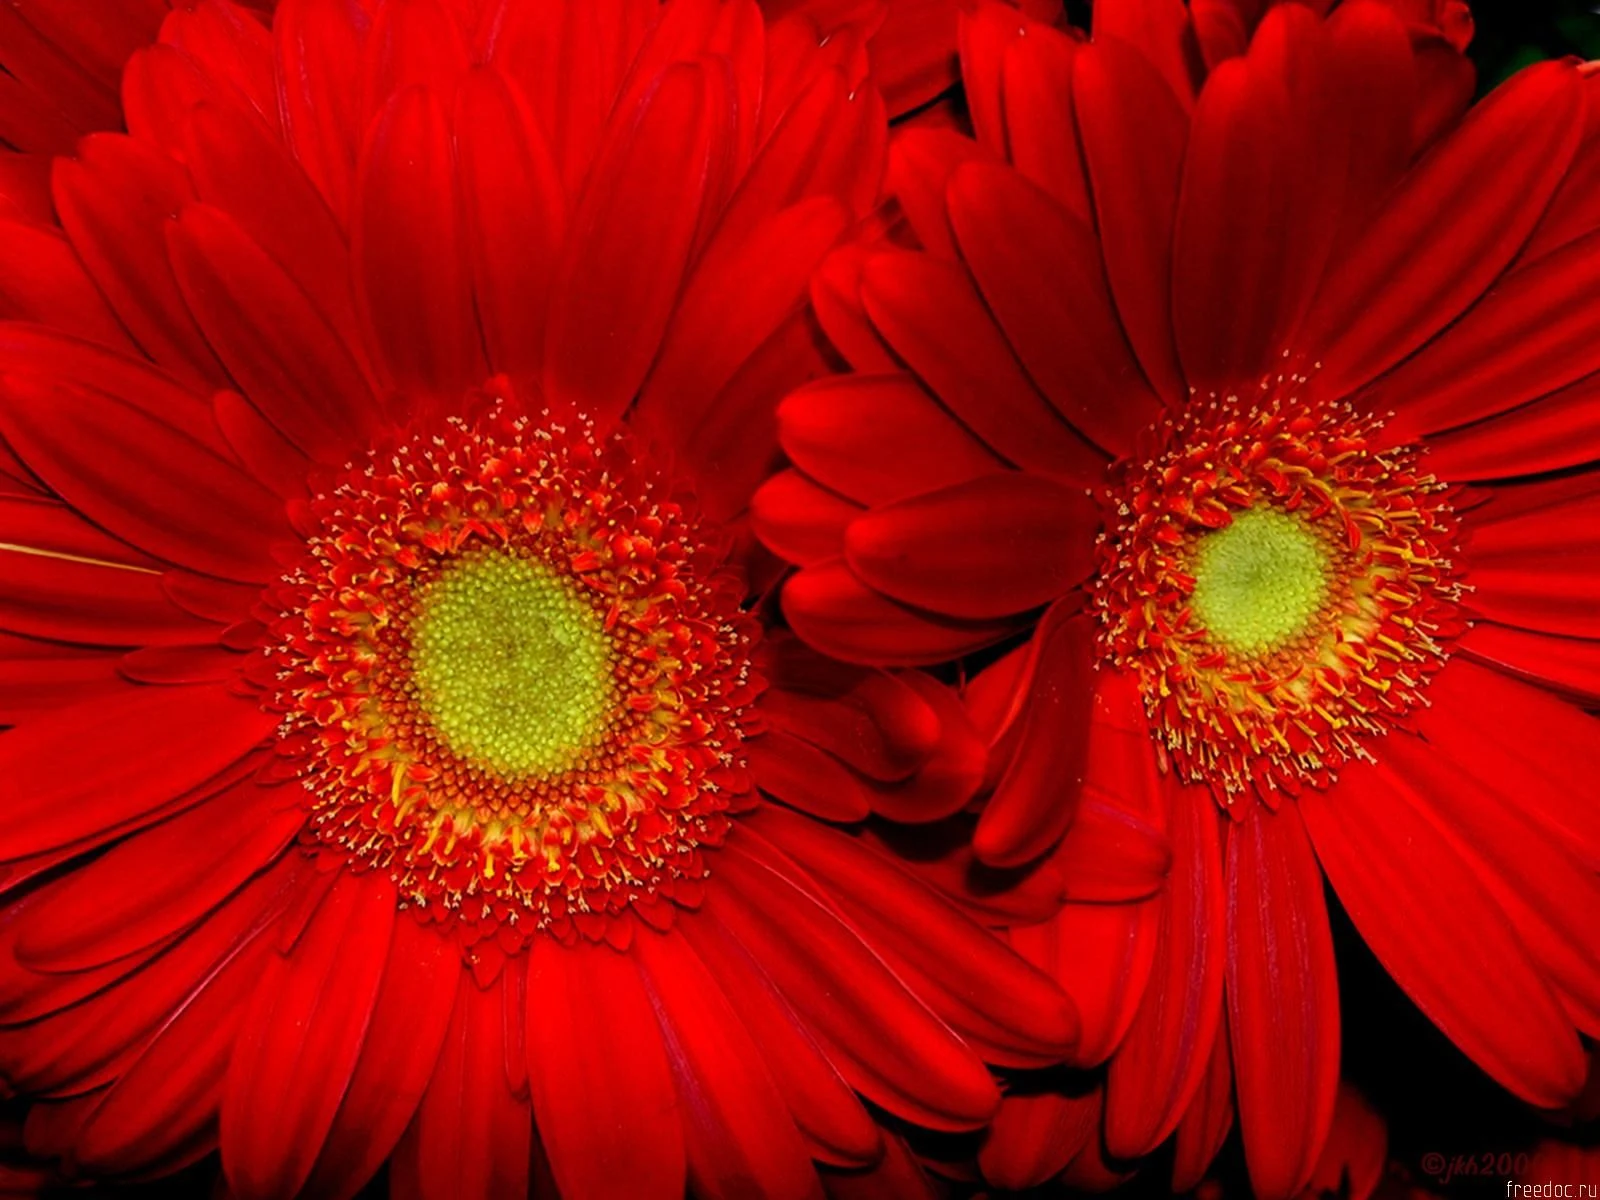 লাল সূর্যমুখী ফুলের ছবি -   সূর্যমুখী ফুলের ছবি ডাউনলোড - Sunflower flower images download - NeotericIT.com